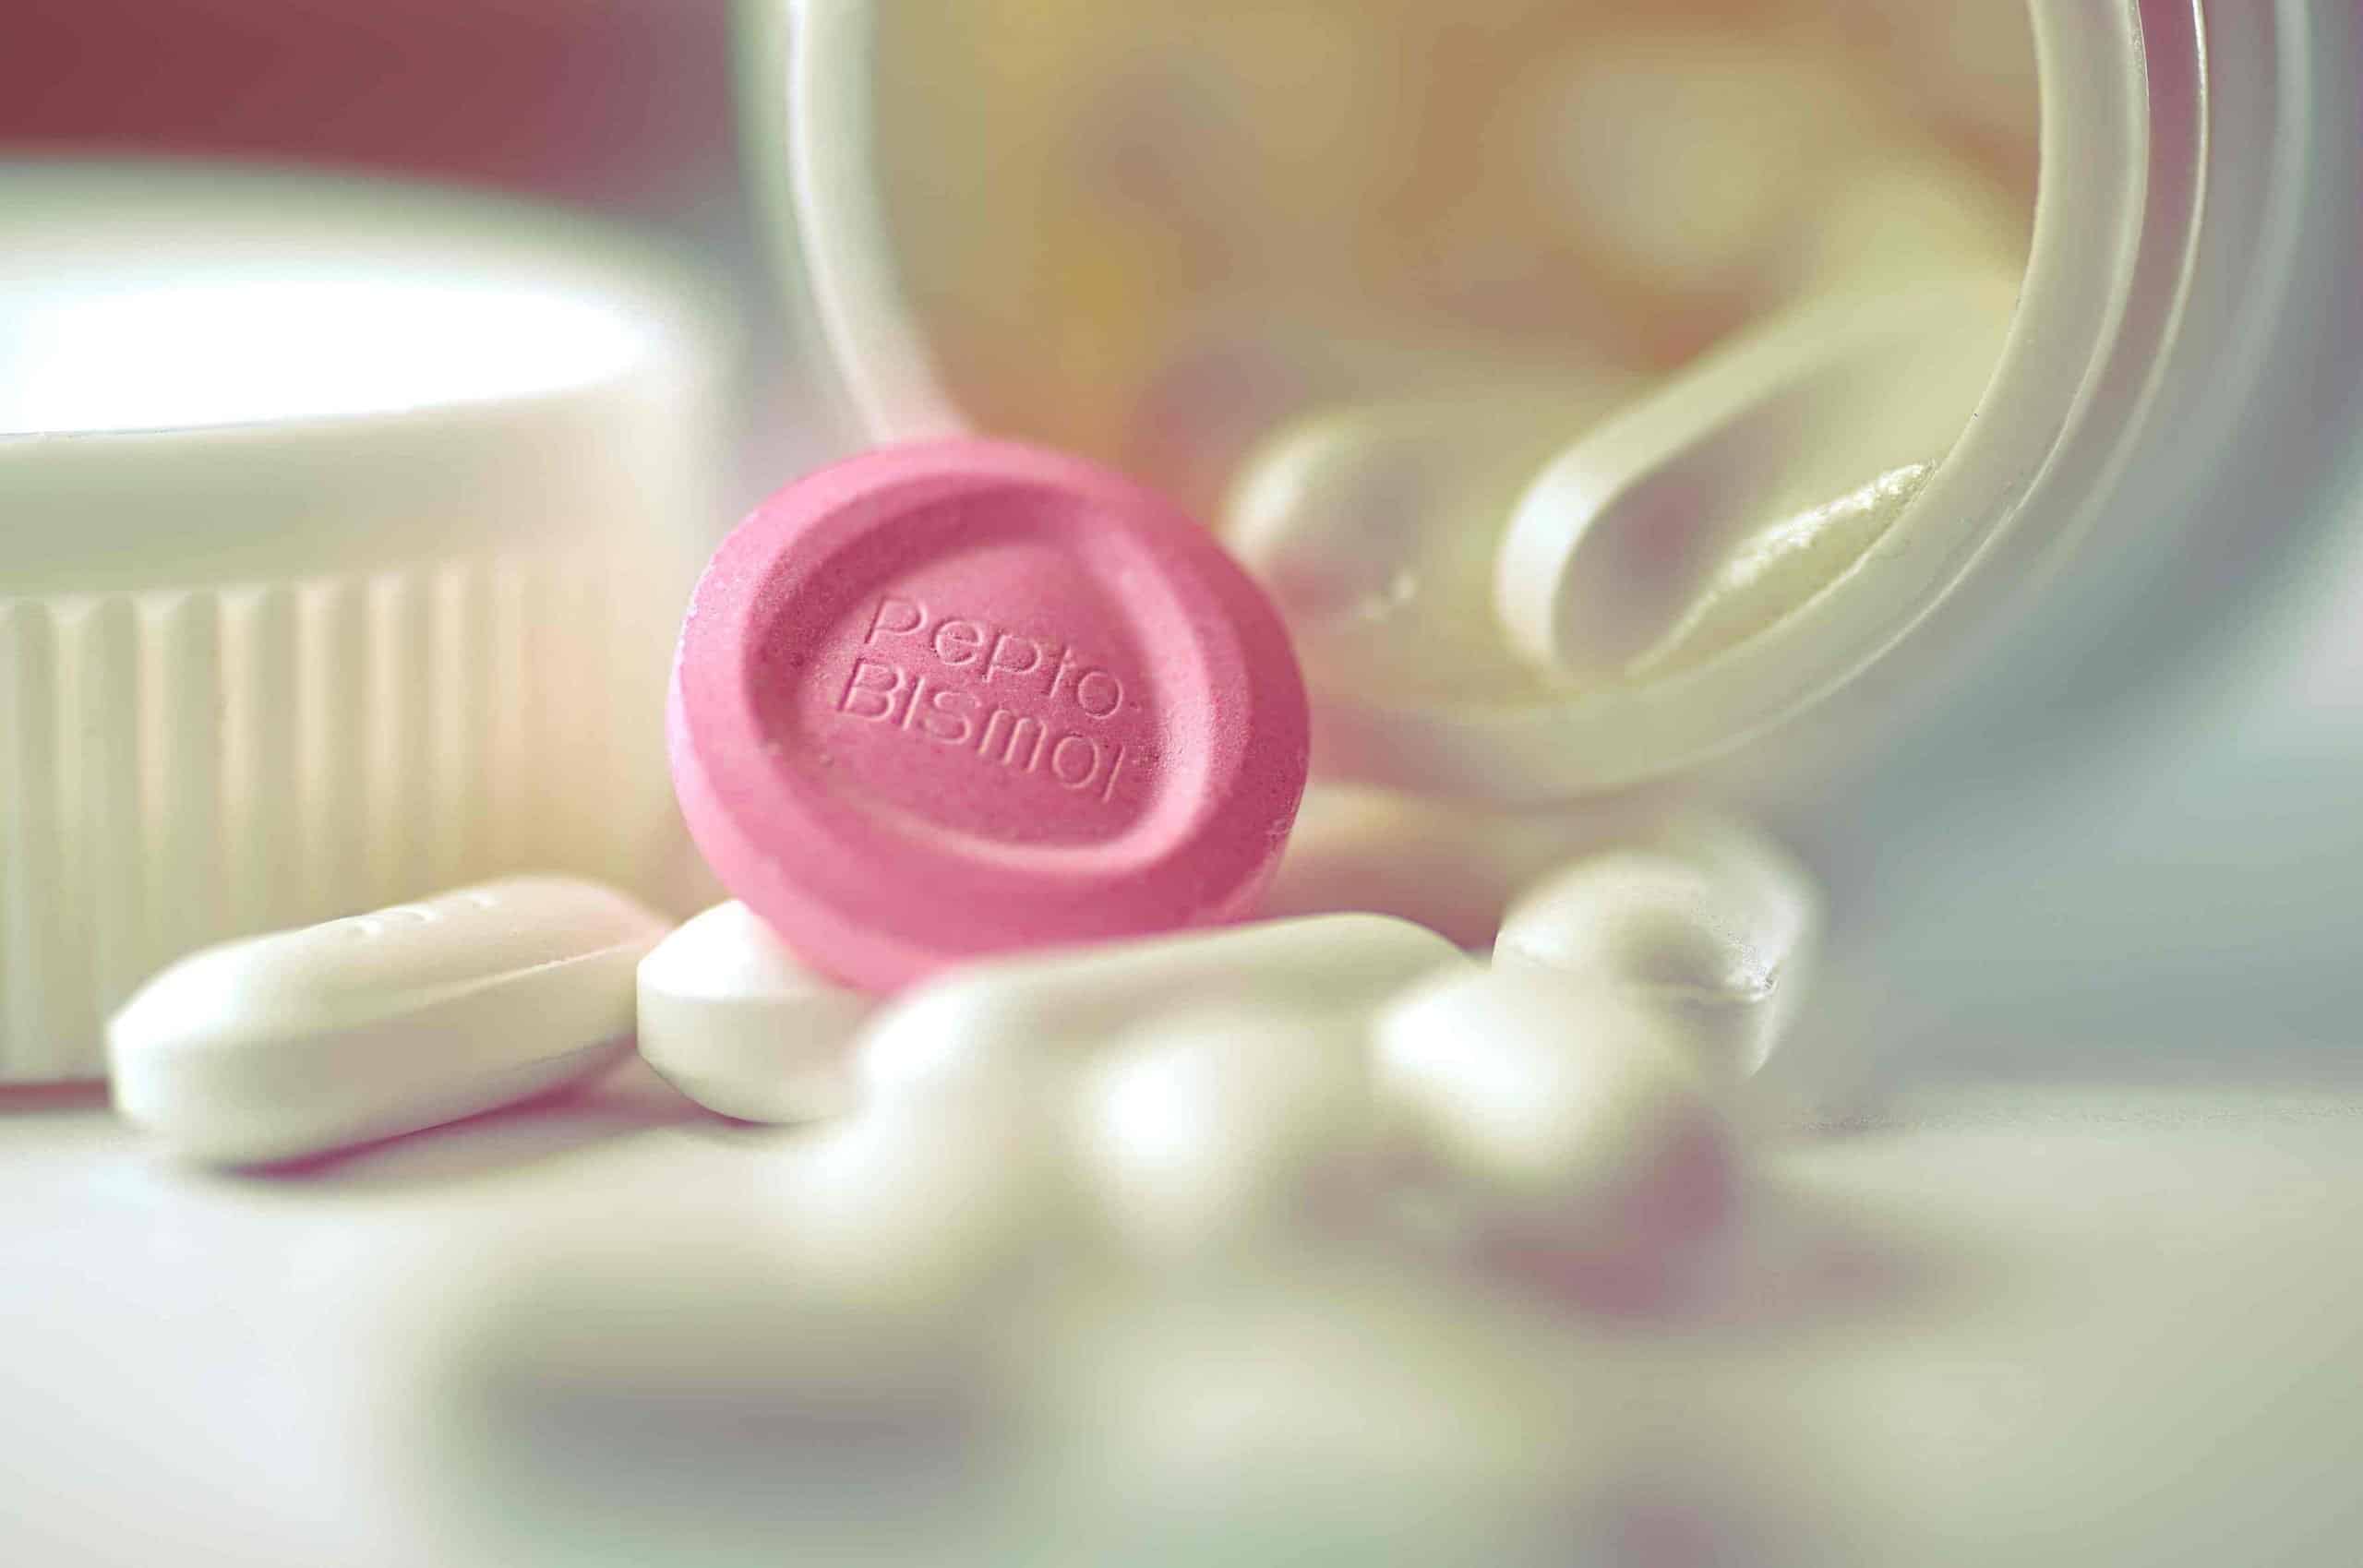  Το «χάπι της επόμενης ημέρας» είναι ασφαλές και χρησιμοποιείται εδώ και χρόνια από πολλές γυναίκες σε ολόκληρο τον κόσμο.